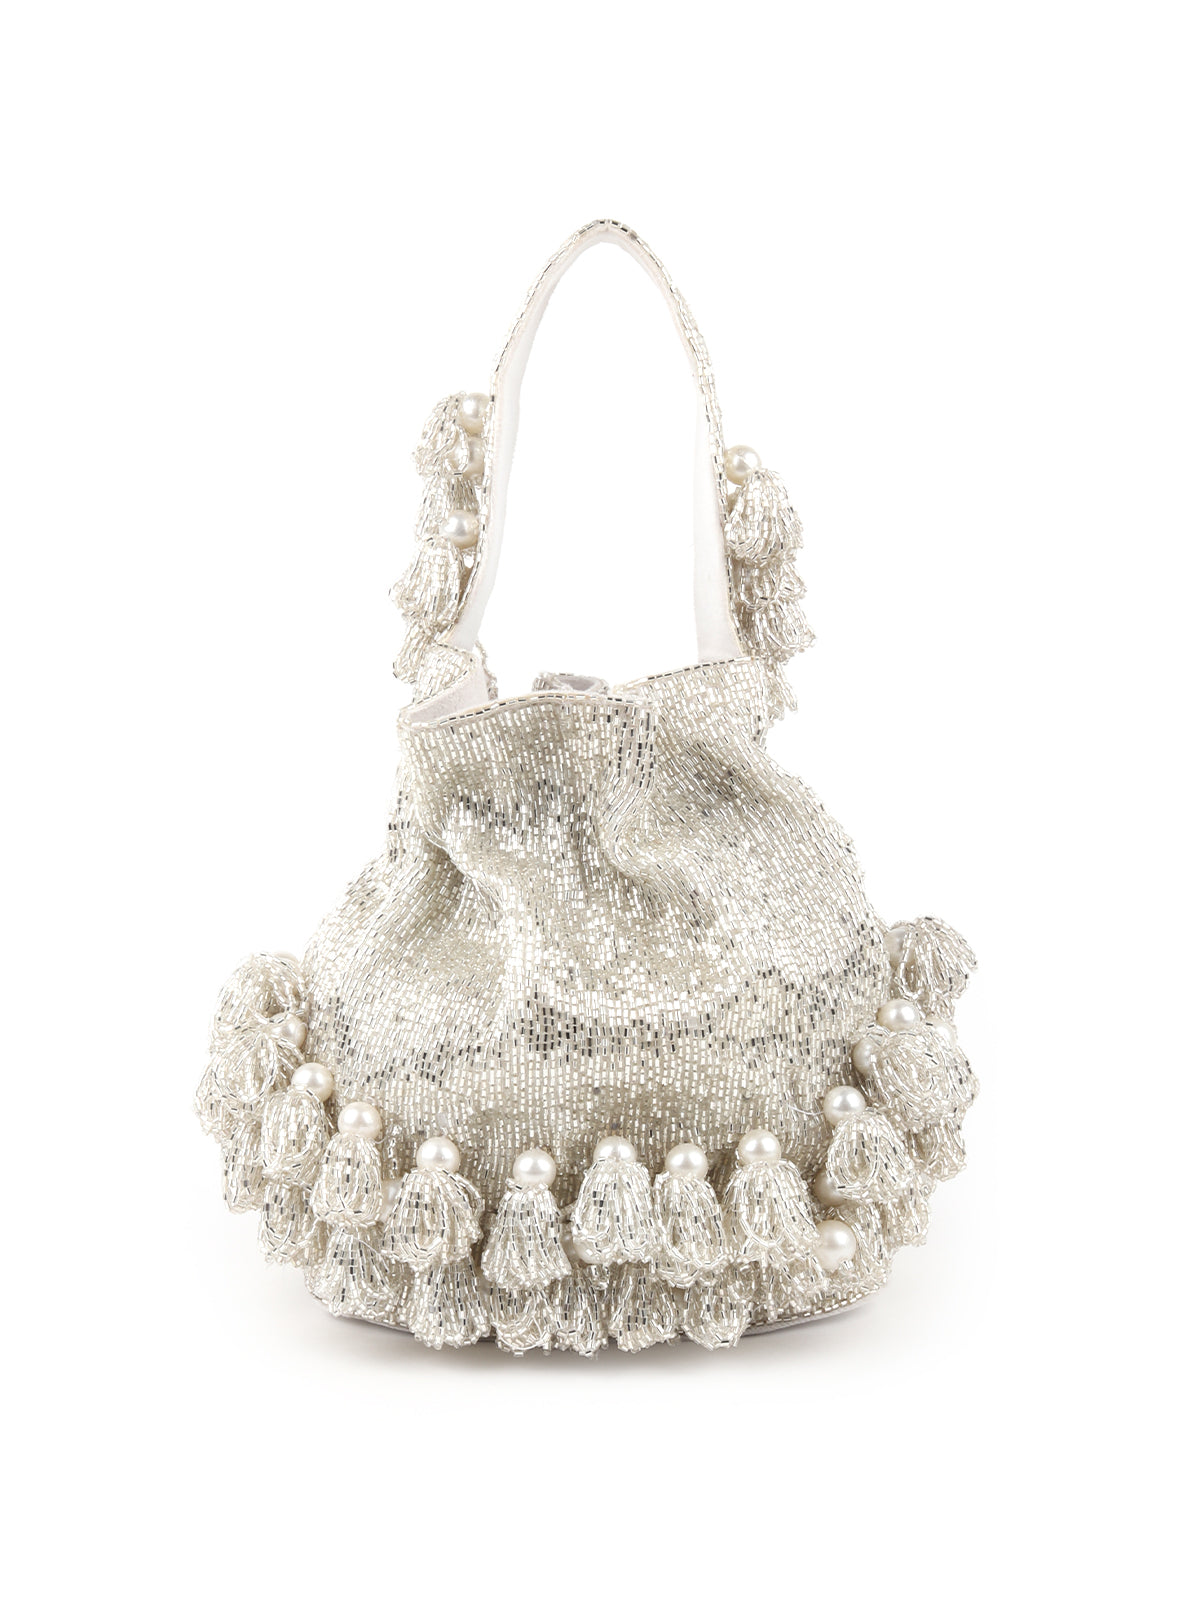 Odette Silver Embroidered Bridal Potli Bag For Women